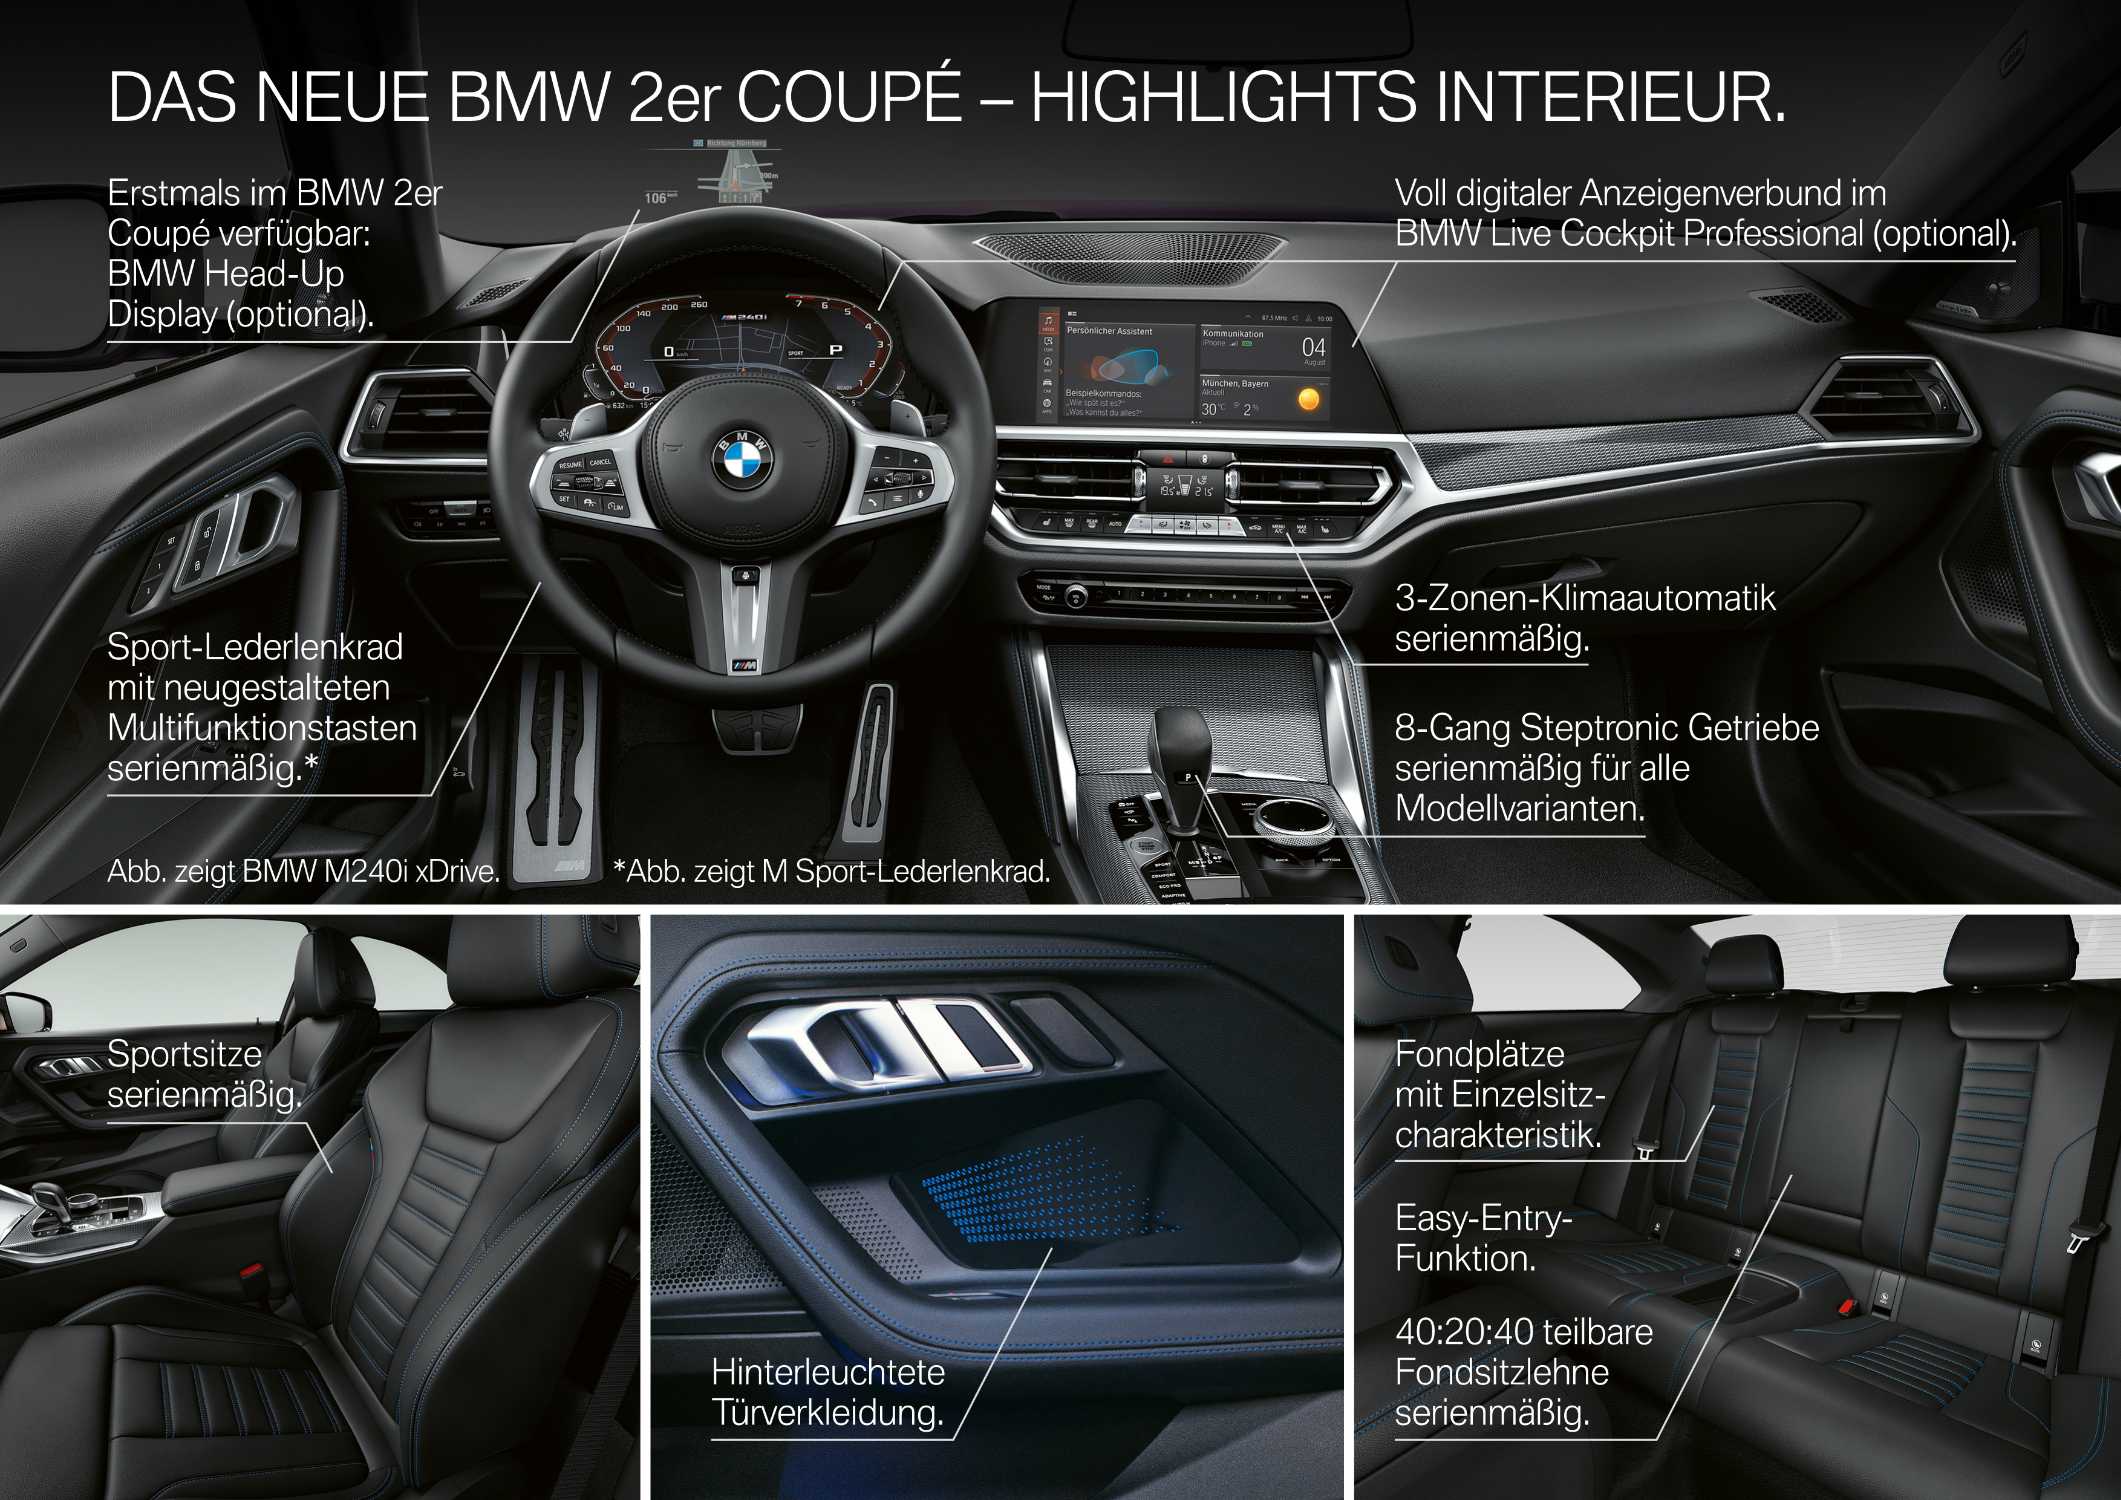 Das neue BMW 2er Coupé - Highlights (07/2021).